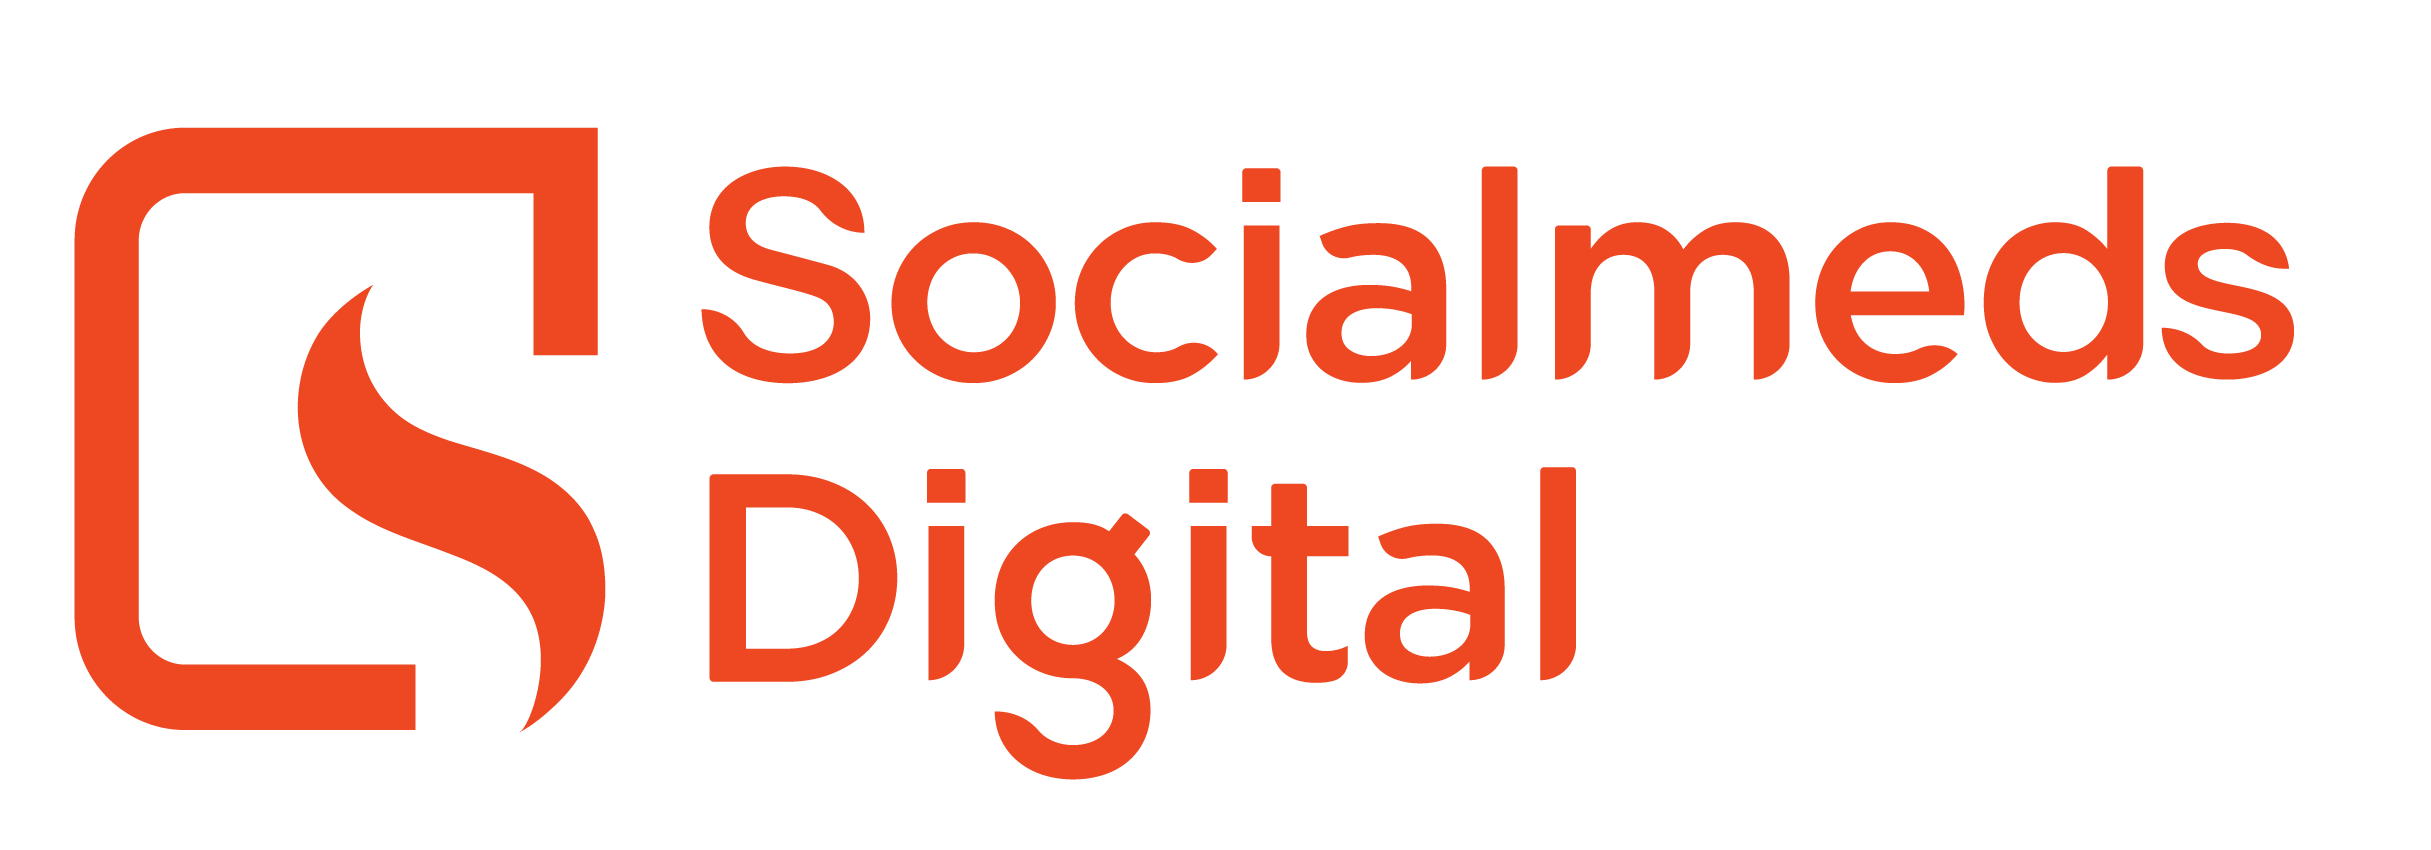 Socialmeds Digital